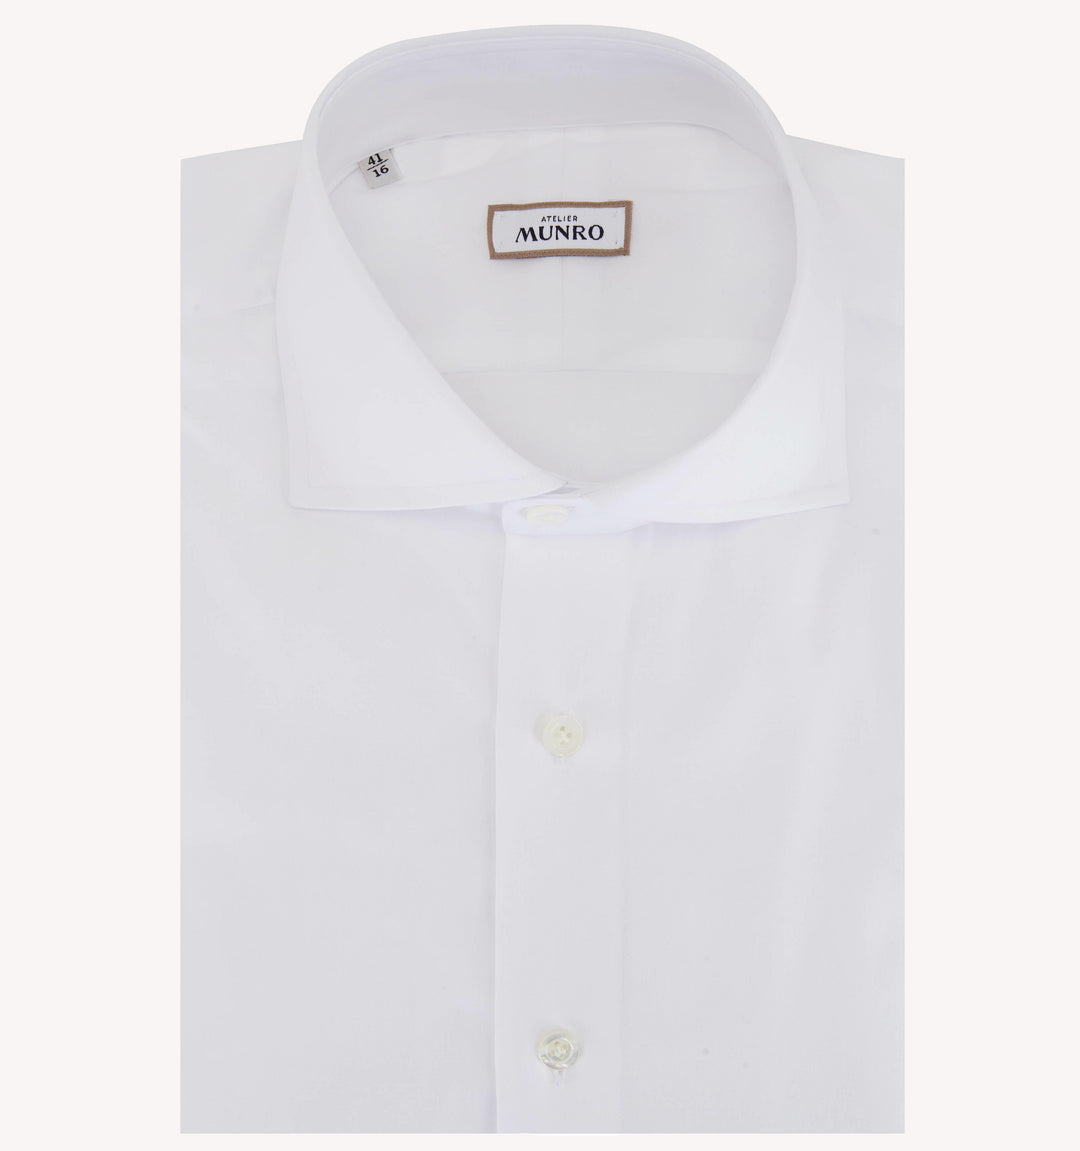 Munro Dress Shirt in White